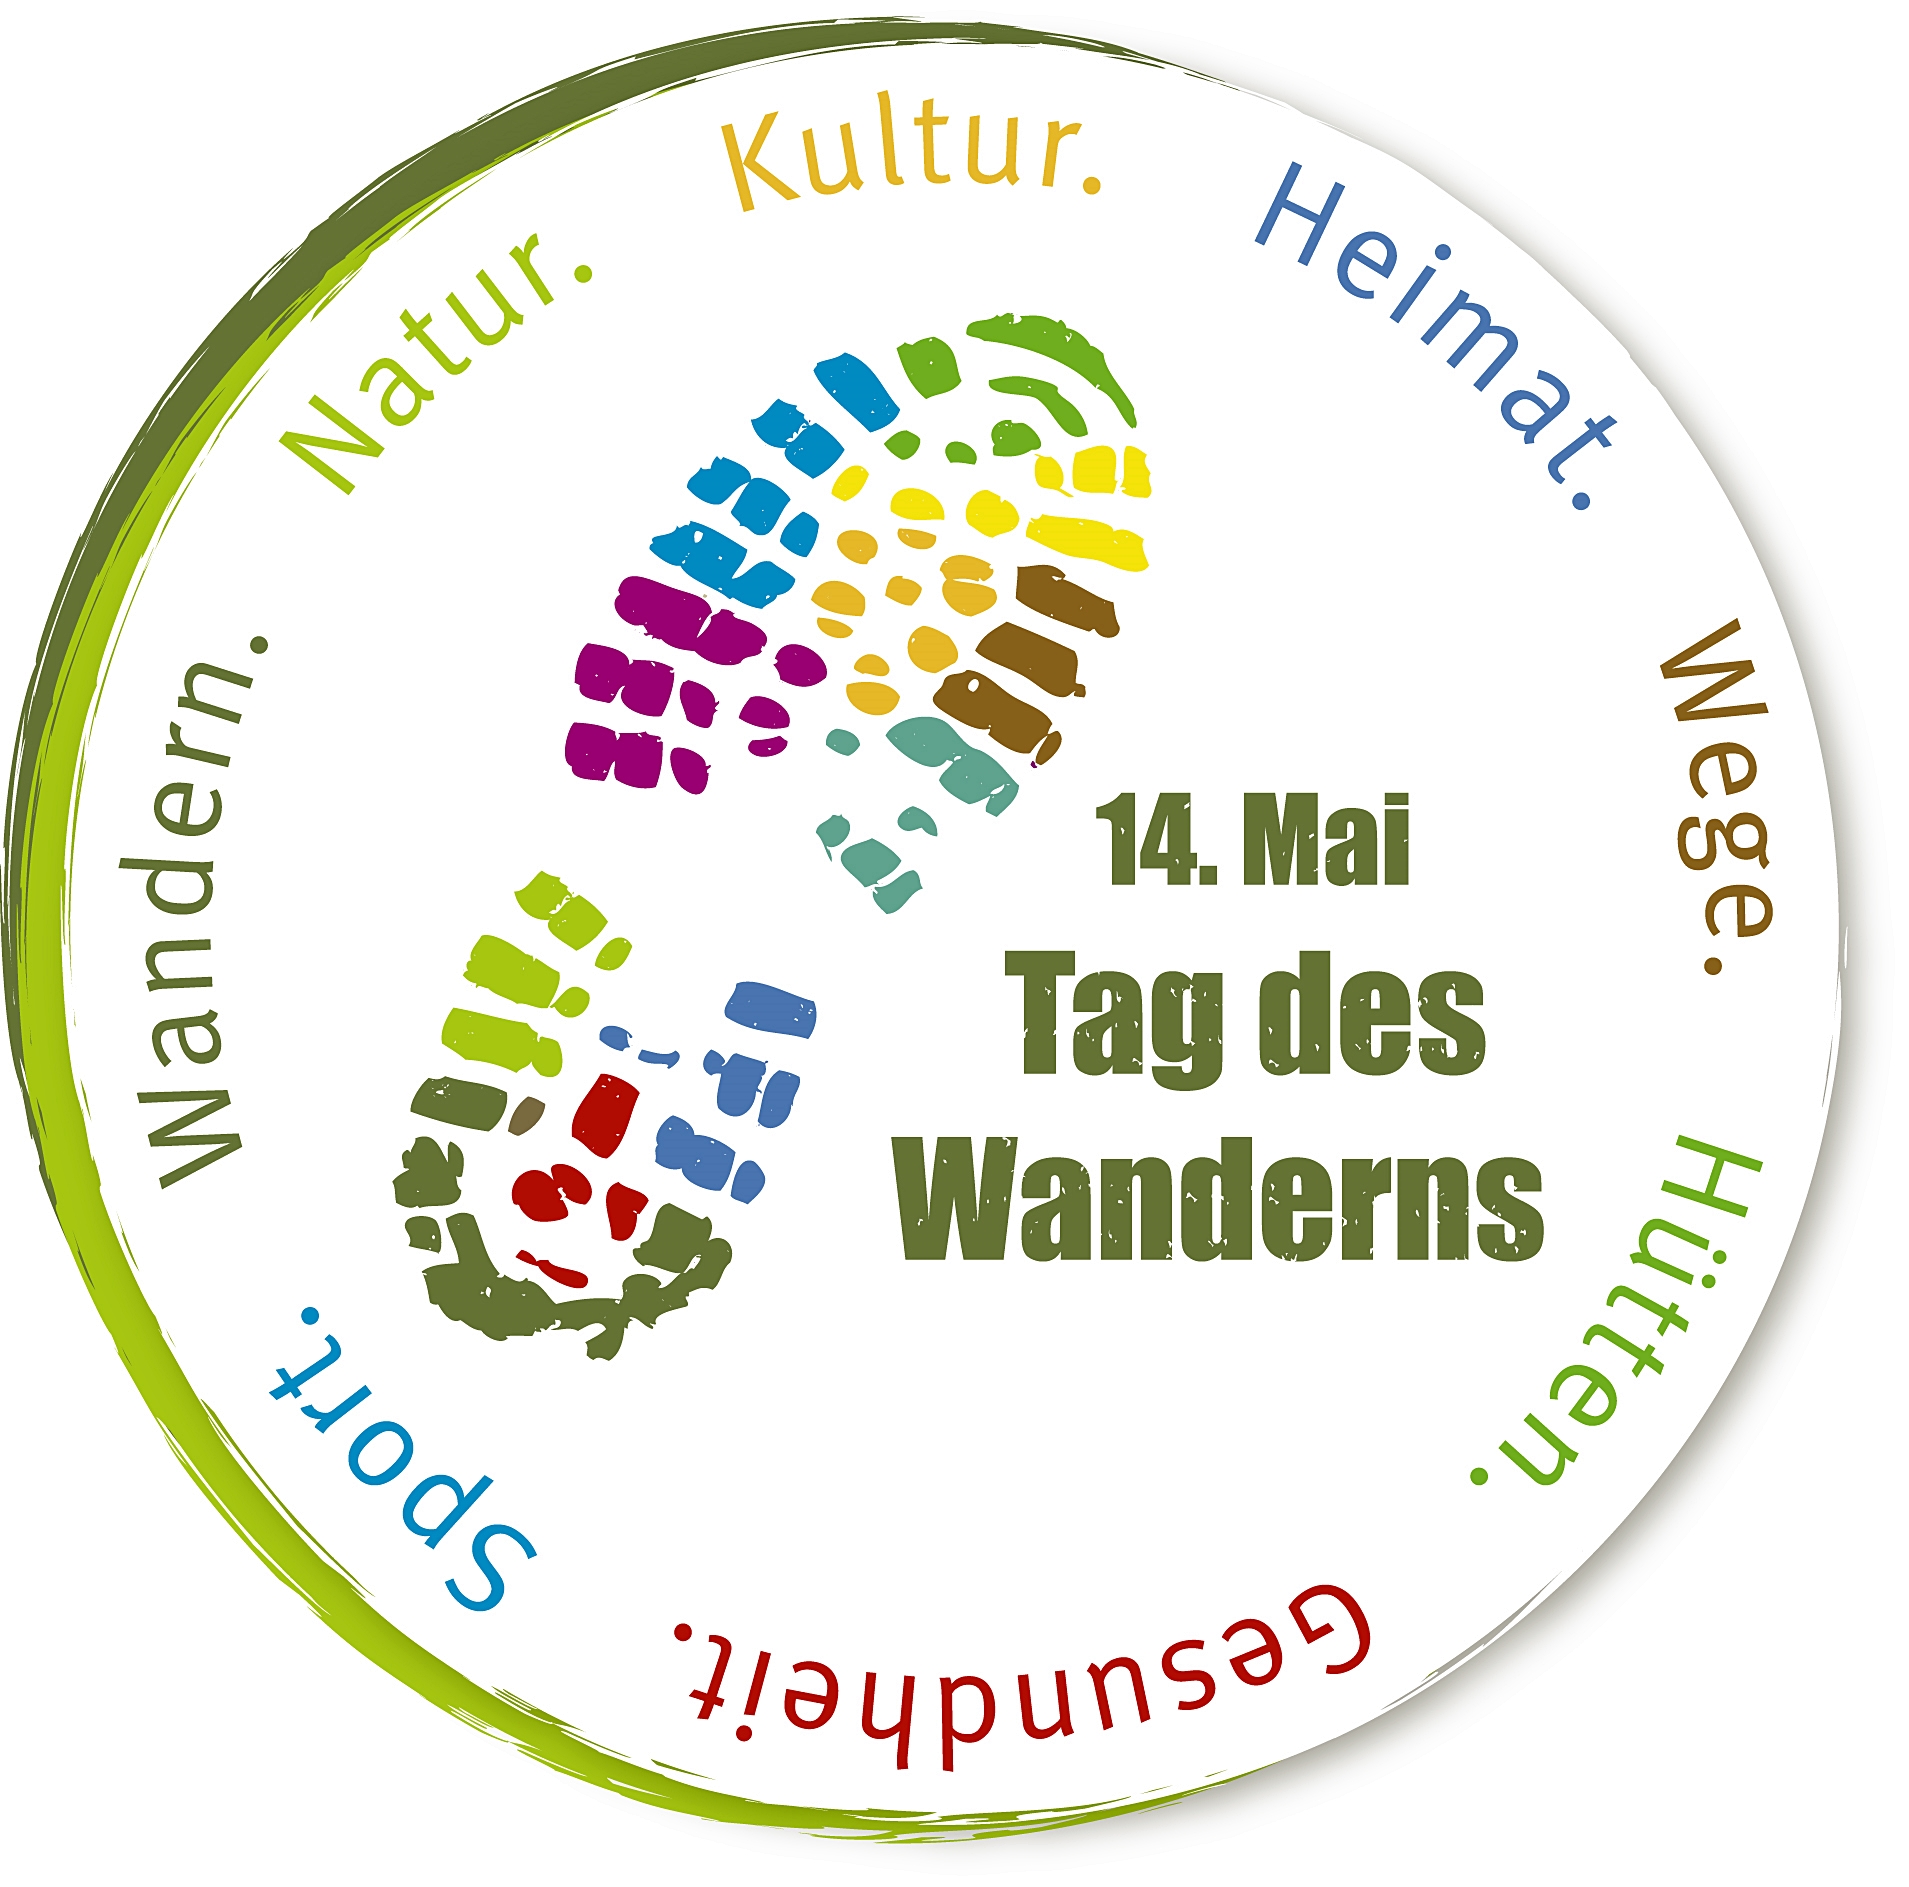 1 Logo Tag des Wanderns